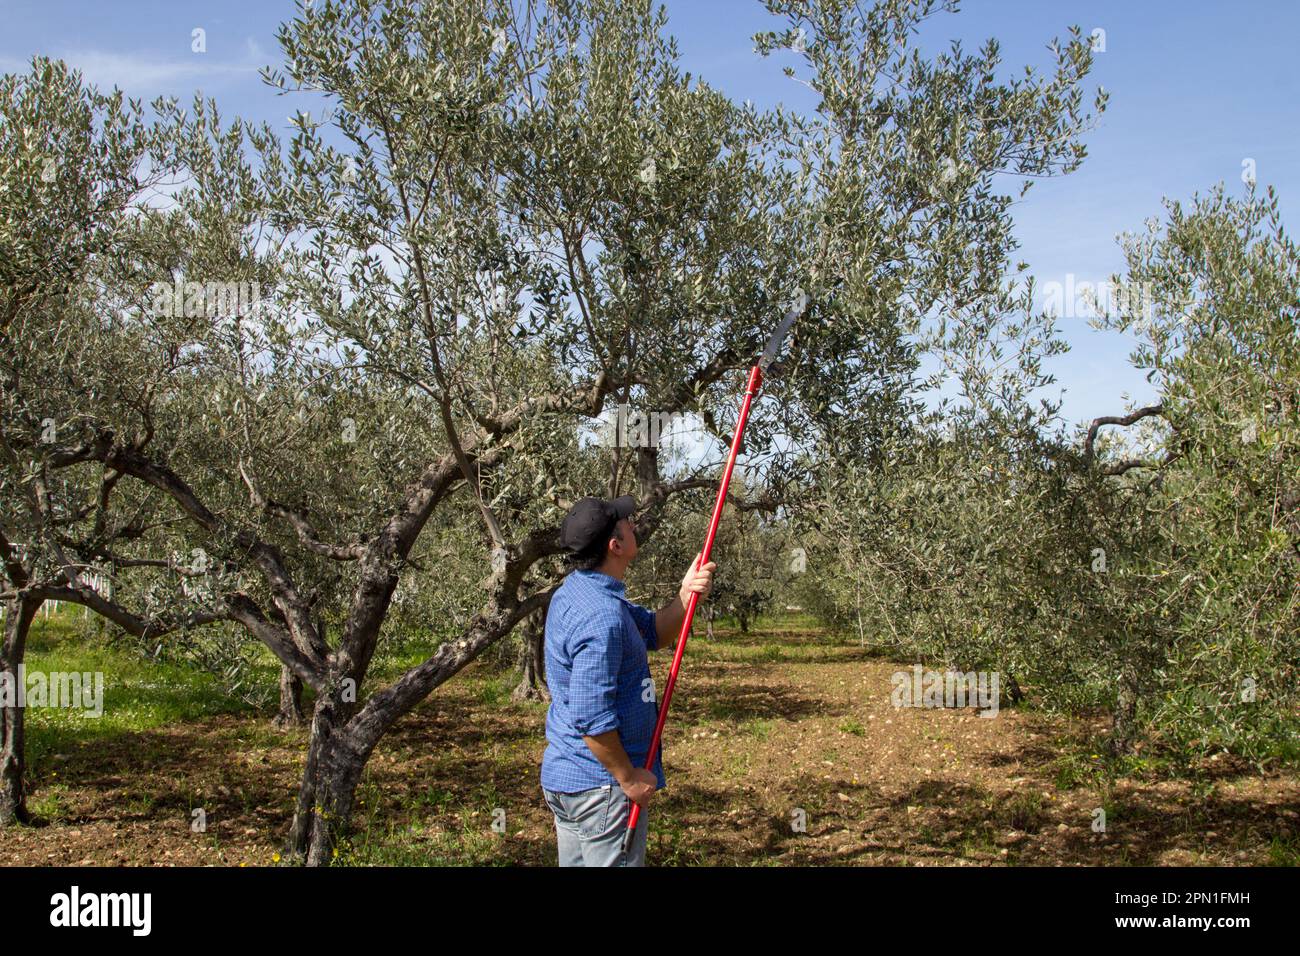 Bild eines Bauern auf dem Land, der mit einer Teleskopsäge die Äste eines Baumes schneidet. Frühjahrsschnitt eines Olivenbaums. Stockfoto